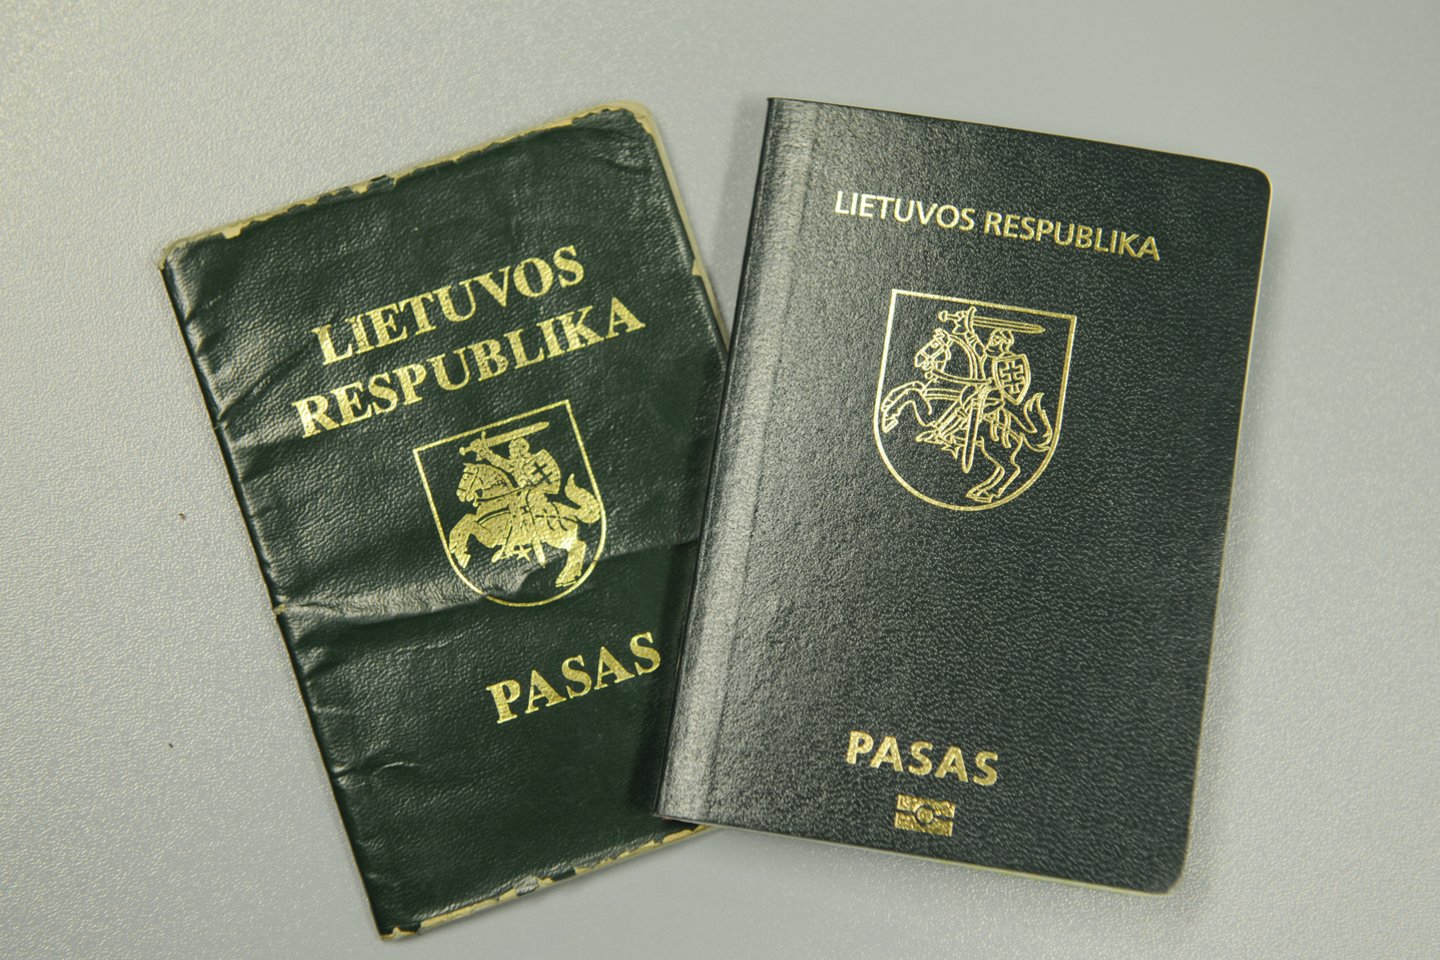 1989 m. lapkričio 3–4 d. vykusioje sesijoje LSSR Aukščiausioji Taryba priėmė LSSR pilietybės ir Referendumo įstatymus. Atkūrus nepriklausomybę šis Pilietybės įstatymas tapo Lietuvos Respublikos pilietybės įstatymu ir galiojo iki 1991 m. lapkričio. <br>V.Ščiavinsko nuotr.